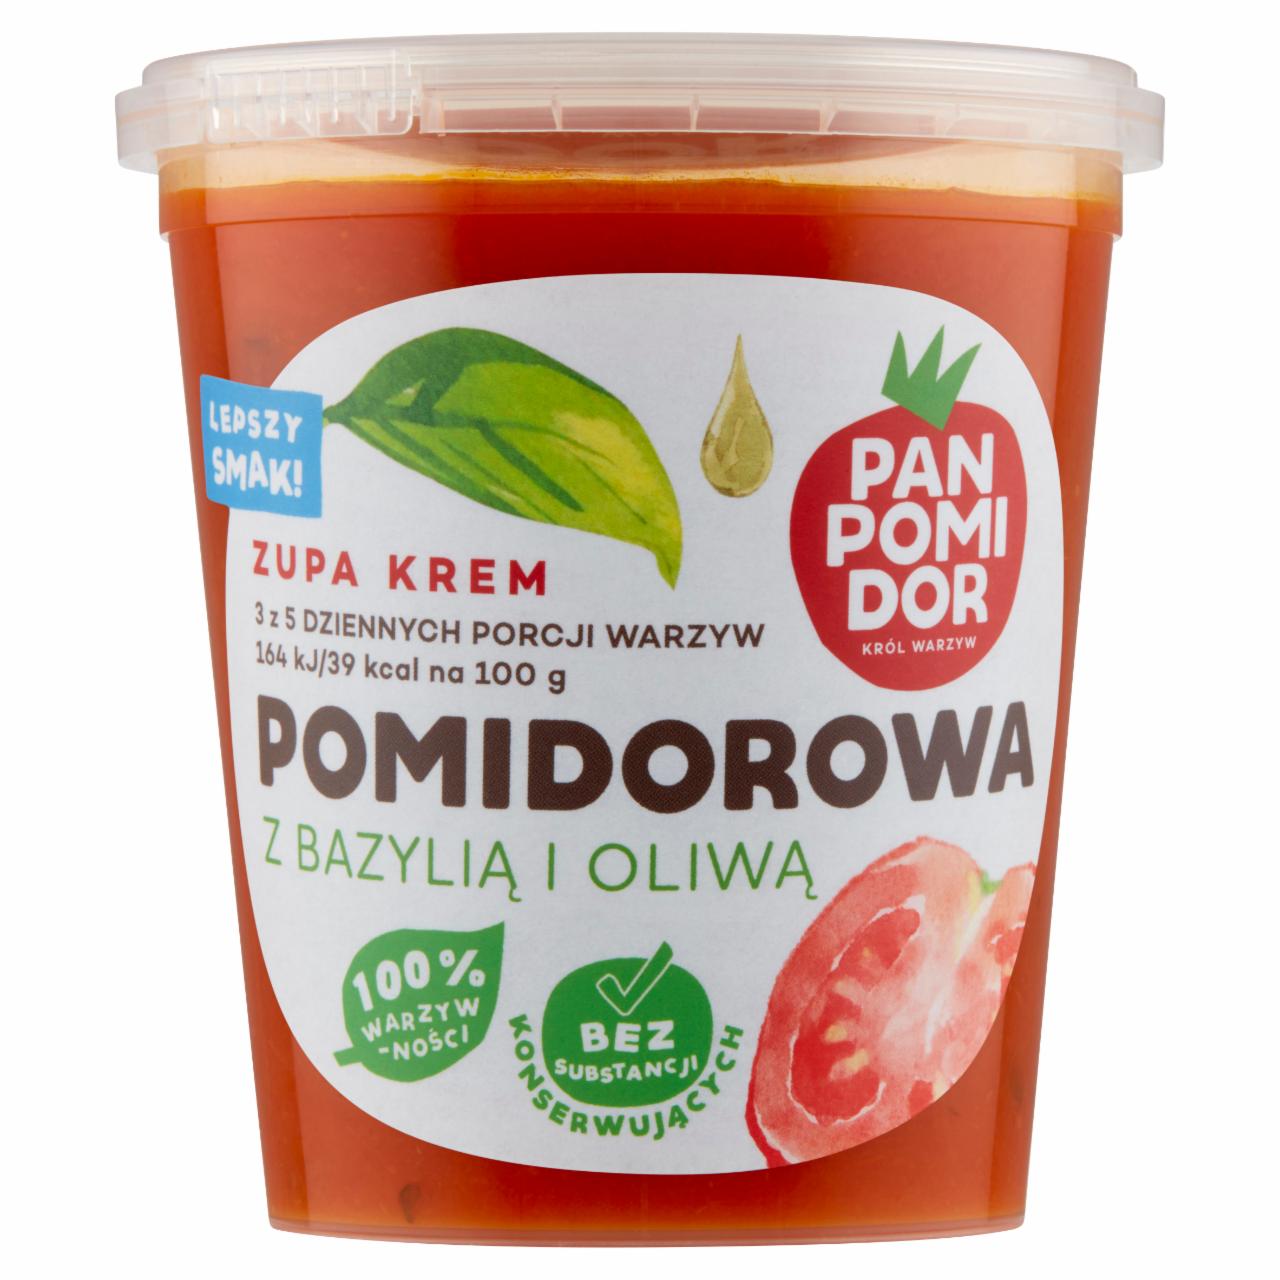 Zdjęcia - Pan Pomidor Zupa krem pomidorowa z bazylią i oliwą 400 g